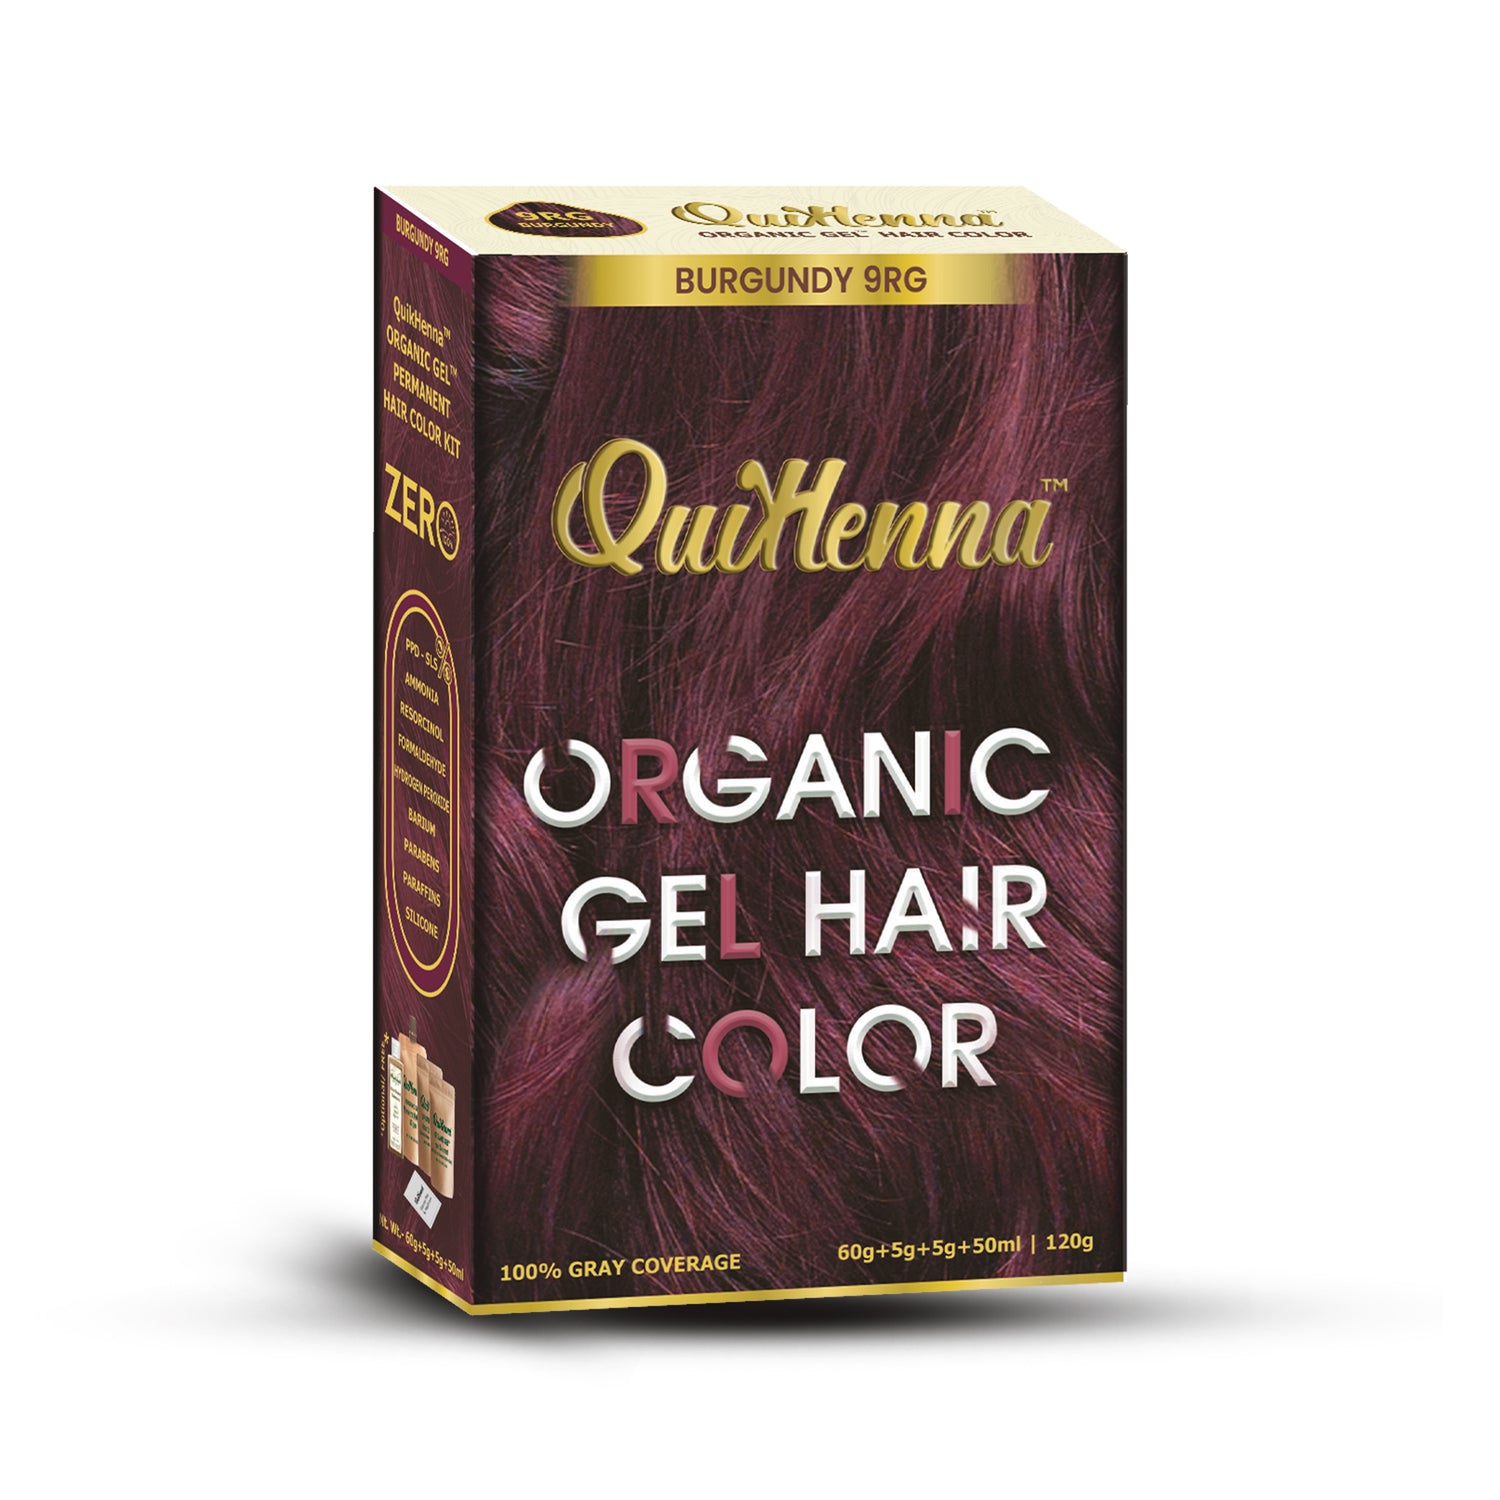 QuikHenna Organic Gel Hair Colour-29